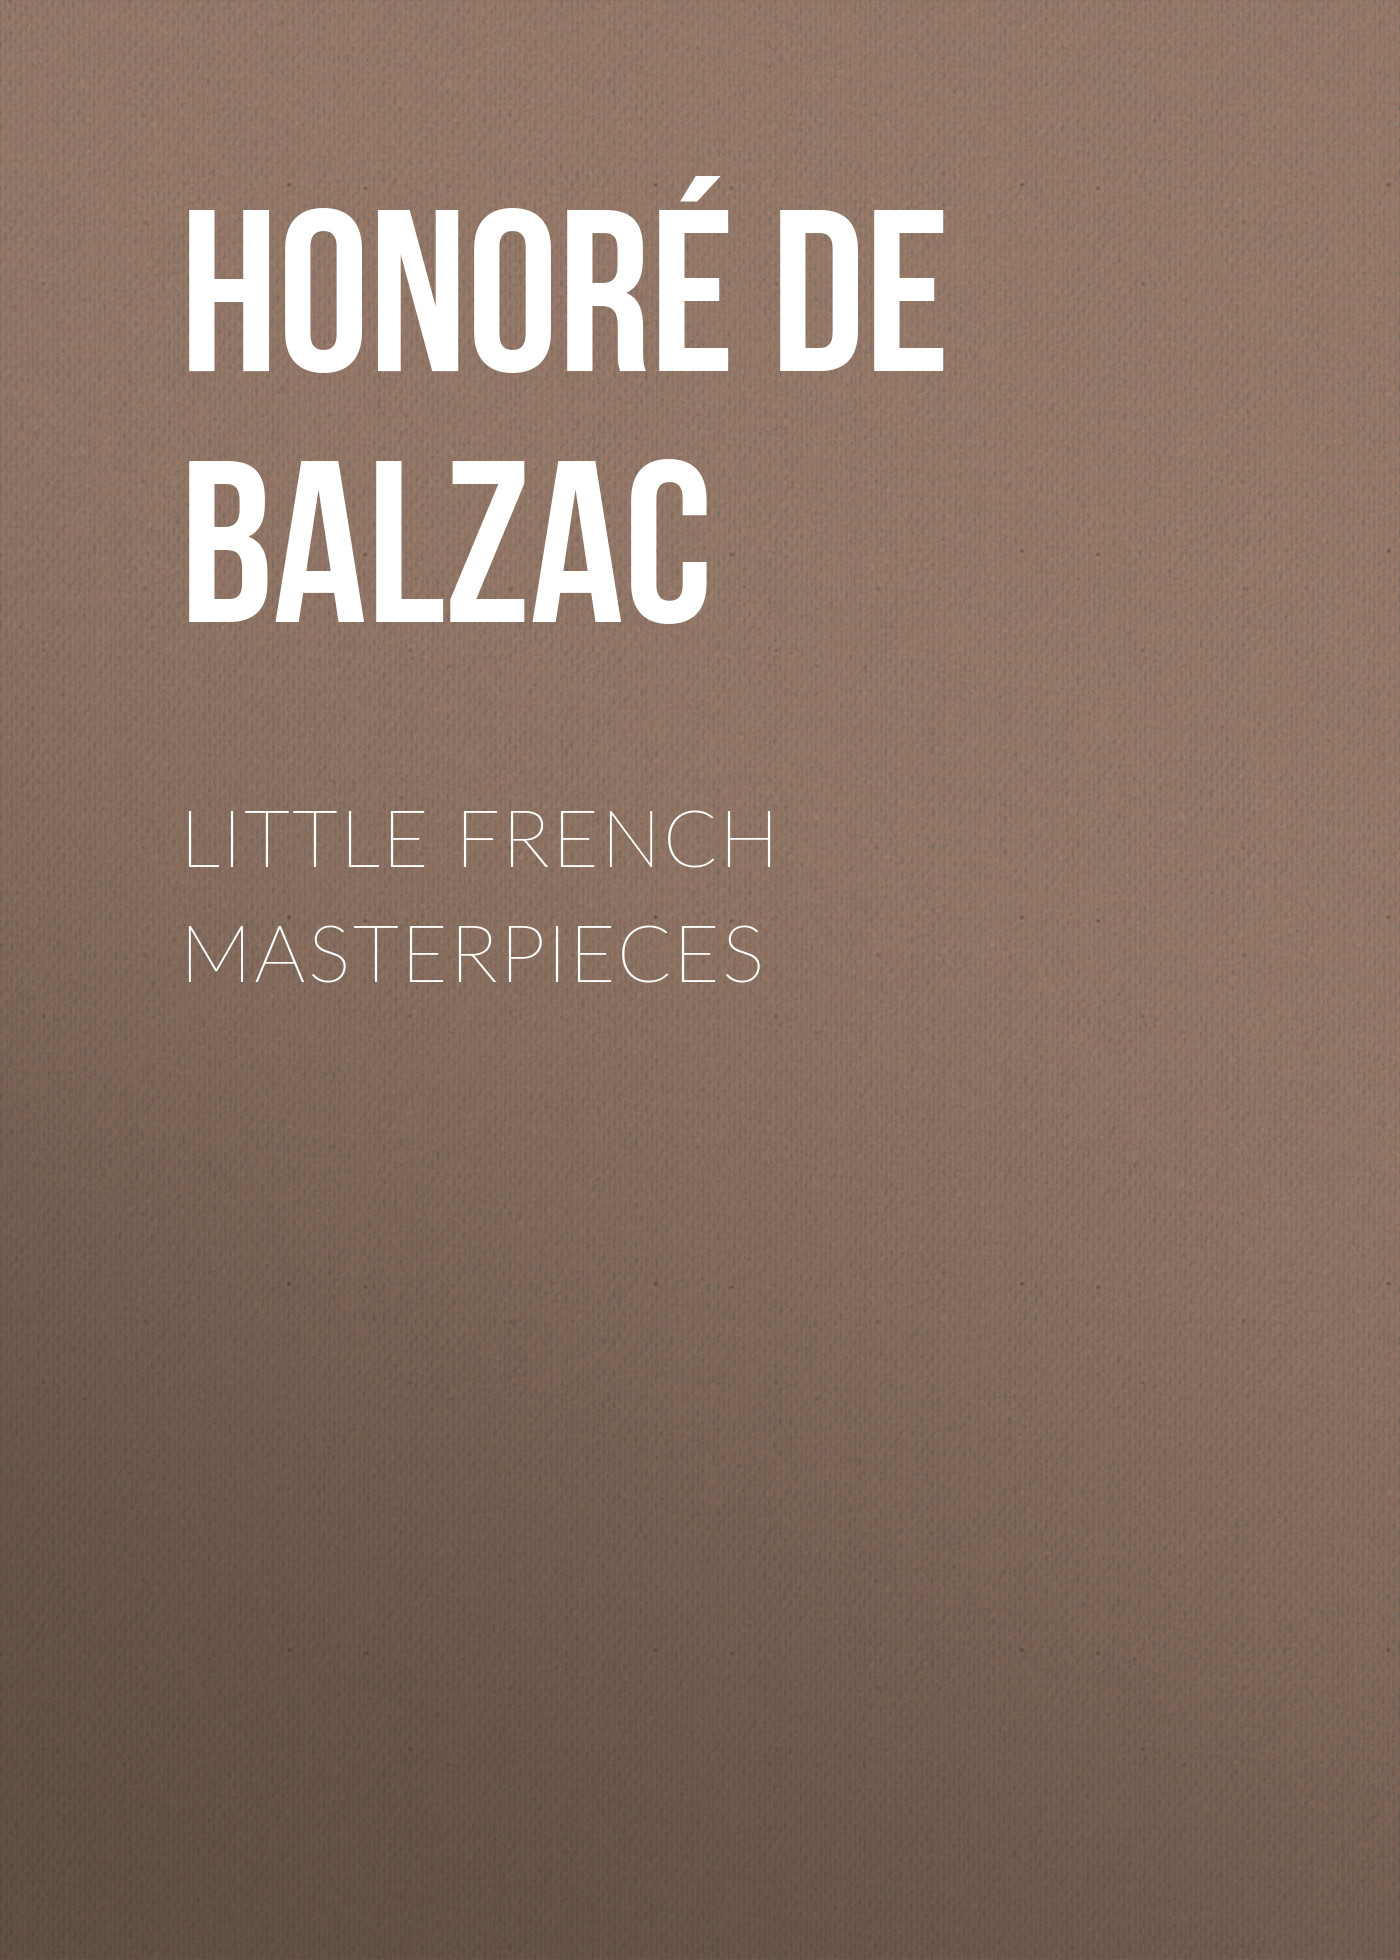 Книга Little French Masterpieces из серии , созданная Honoré Balzac, может относится к жанру Зарубежная старинная литература, Зарубежная классика. Стоимость электронной книги Little French Masterpieces с идентификатором 24176932 составляет 0 руб.